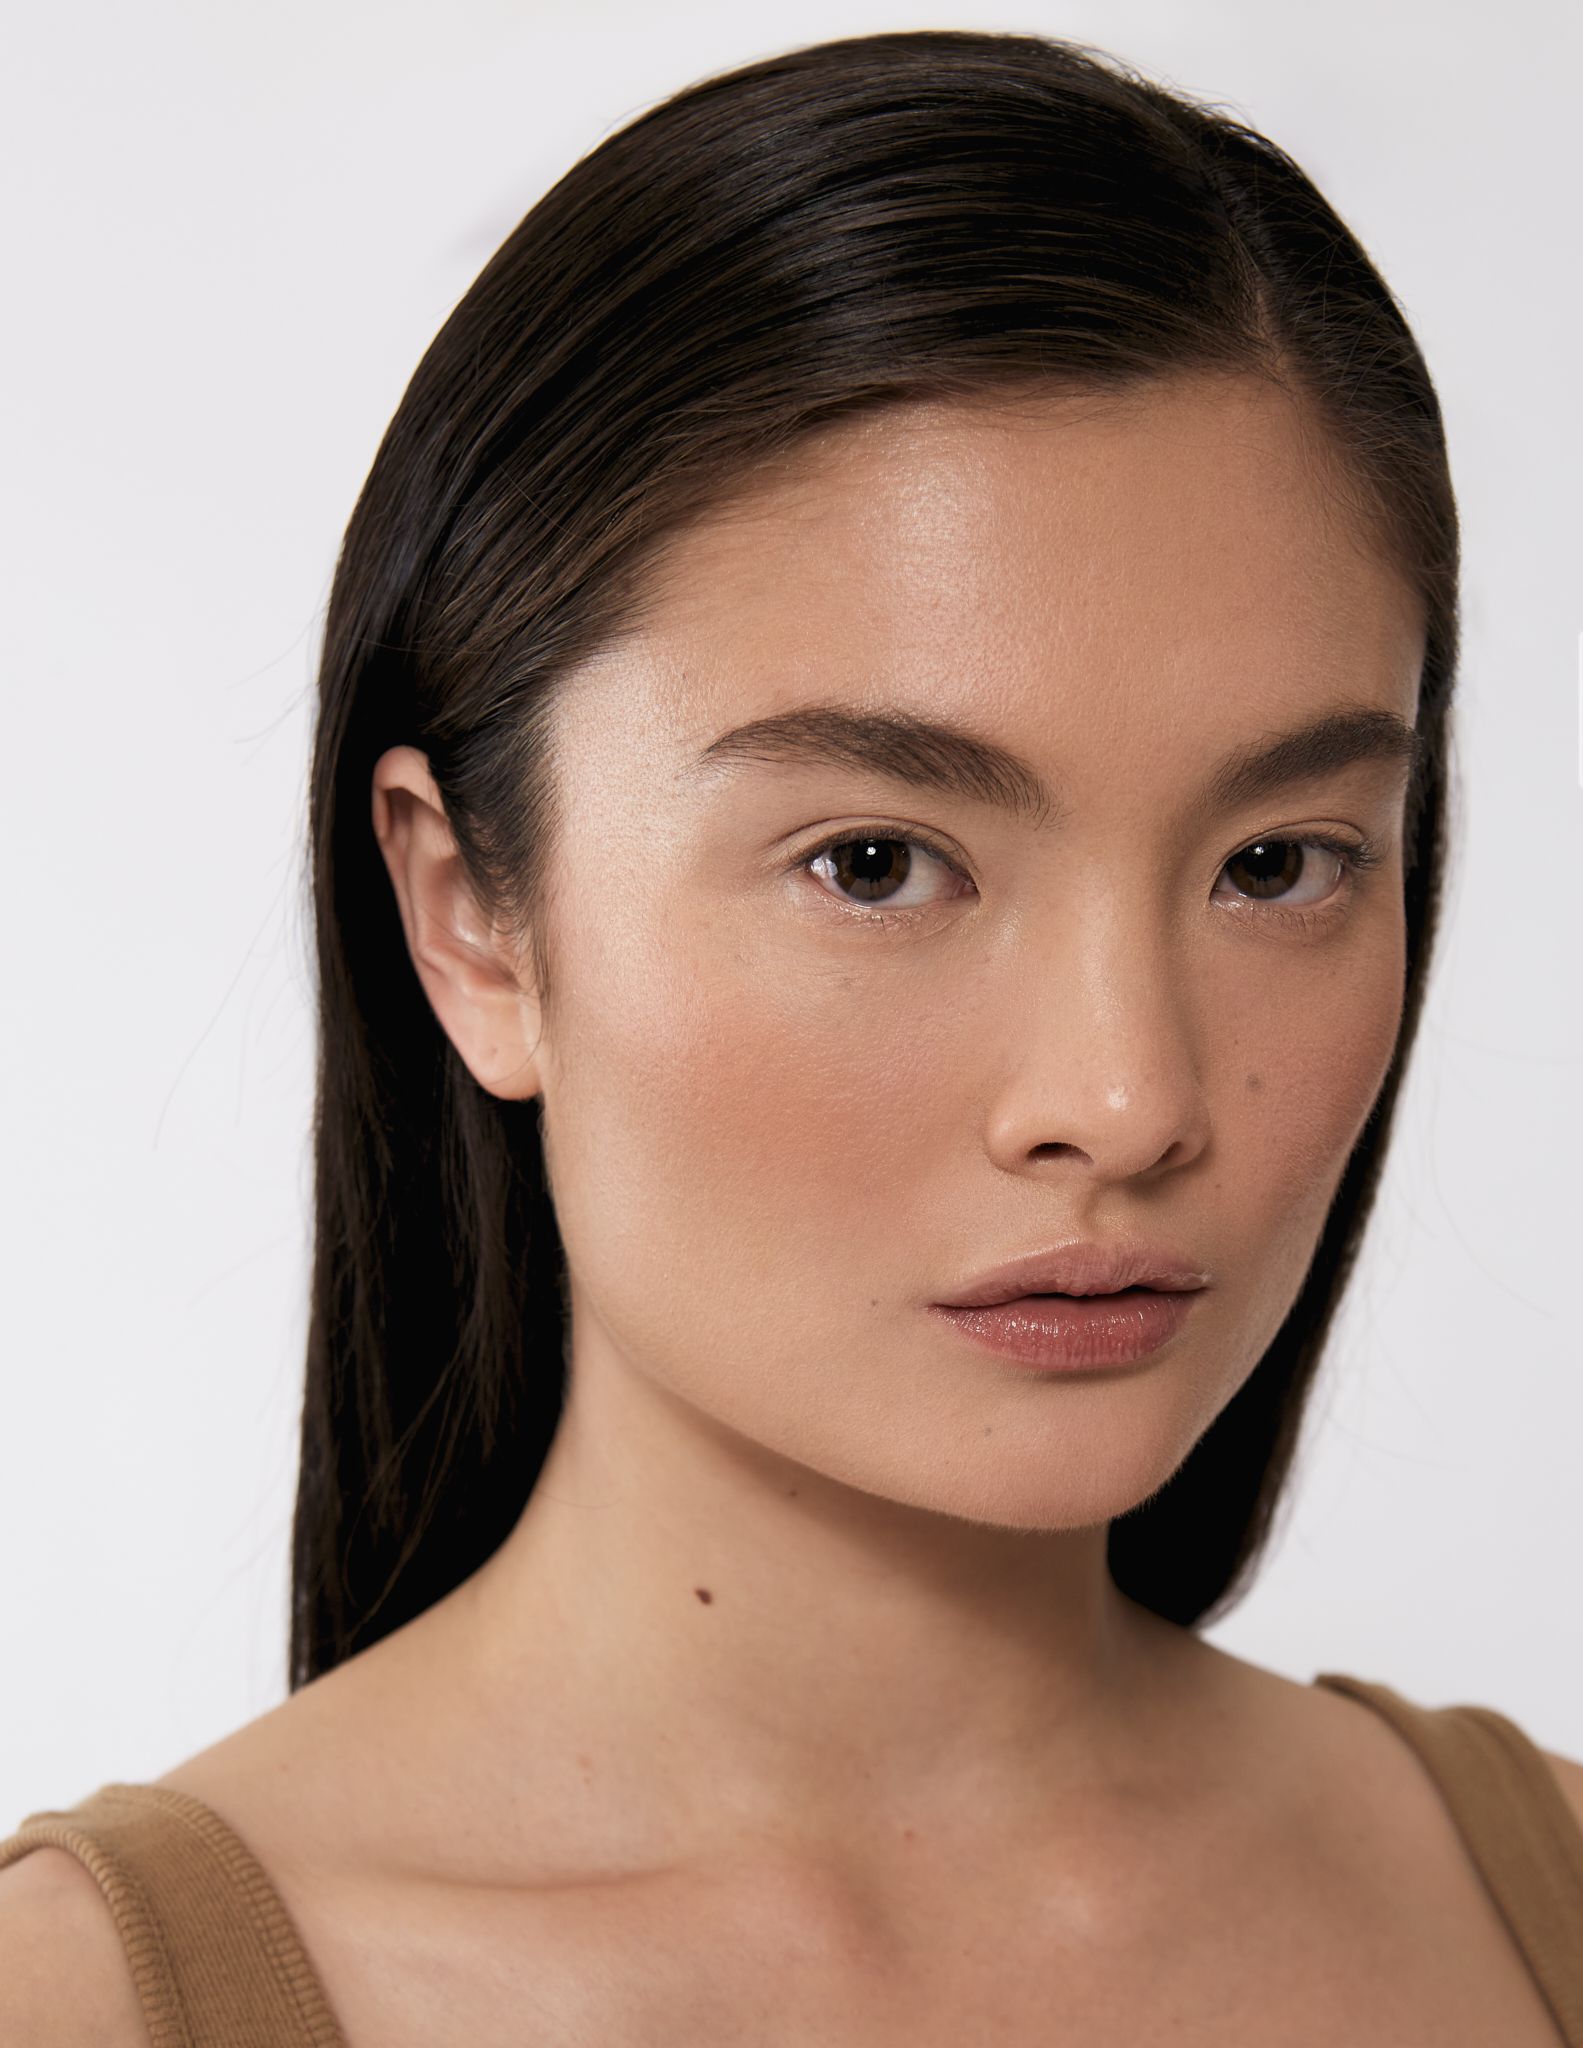 Alexandra - a model from Hong Kong, Hong Kong